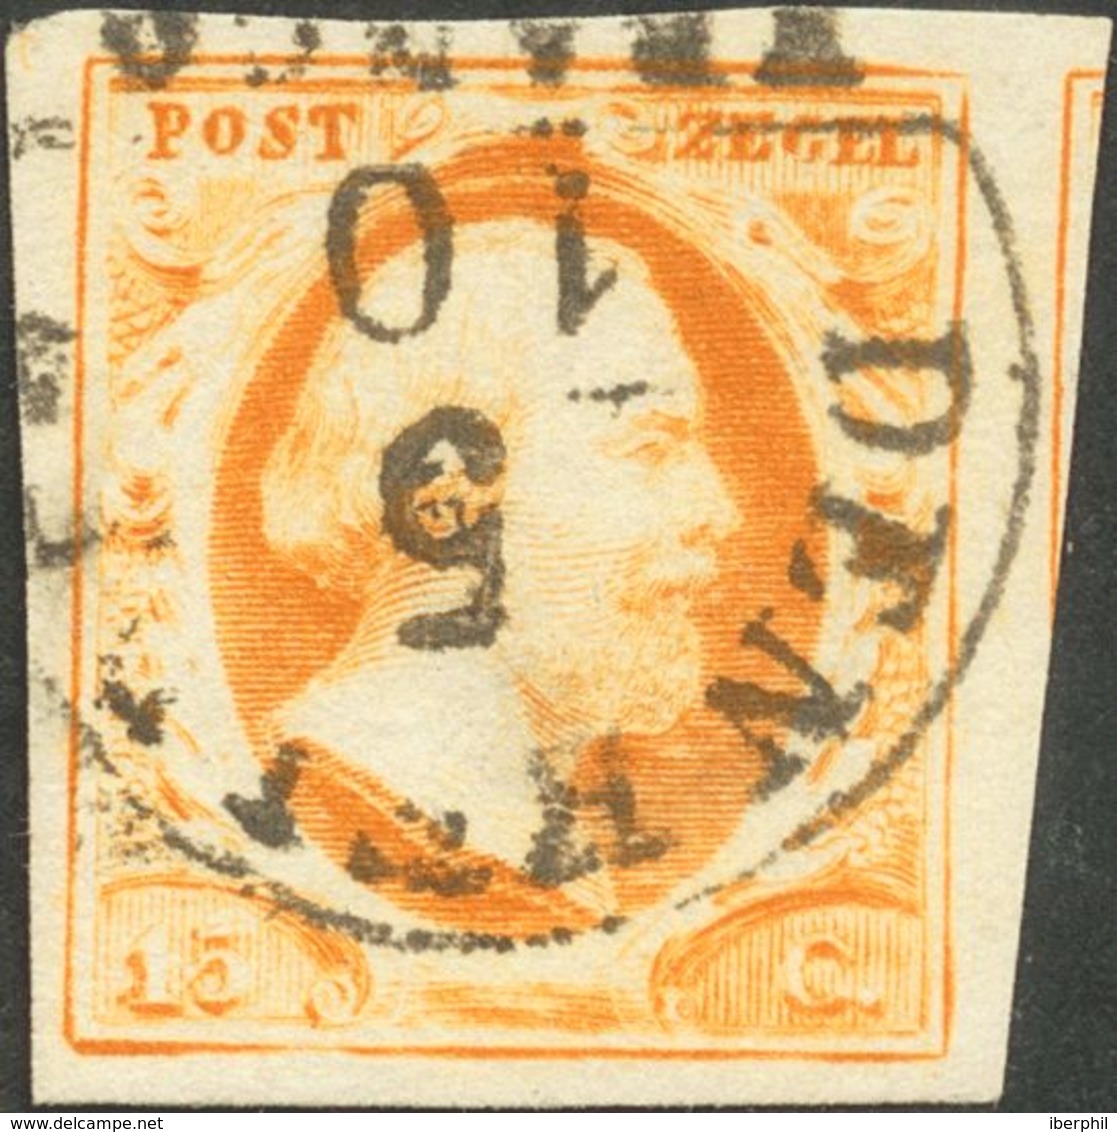 Holanda. ºYv 3. 1852. 15 Cent Dark Orange. Cancelled With DEN HELDER Datestamp Type A (Ey 250). VERY FINE. -- Netherland - ...-1852 Precursores